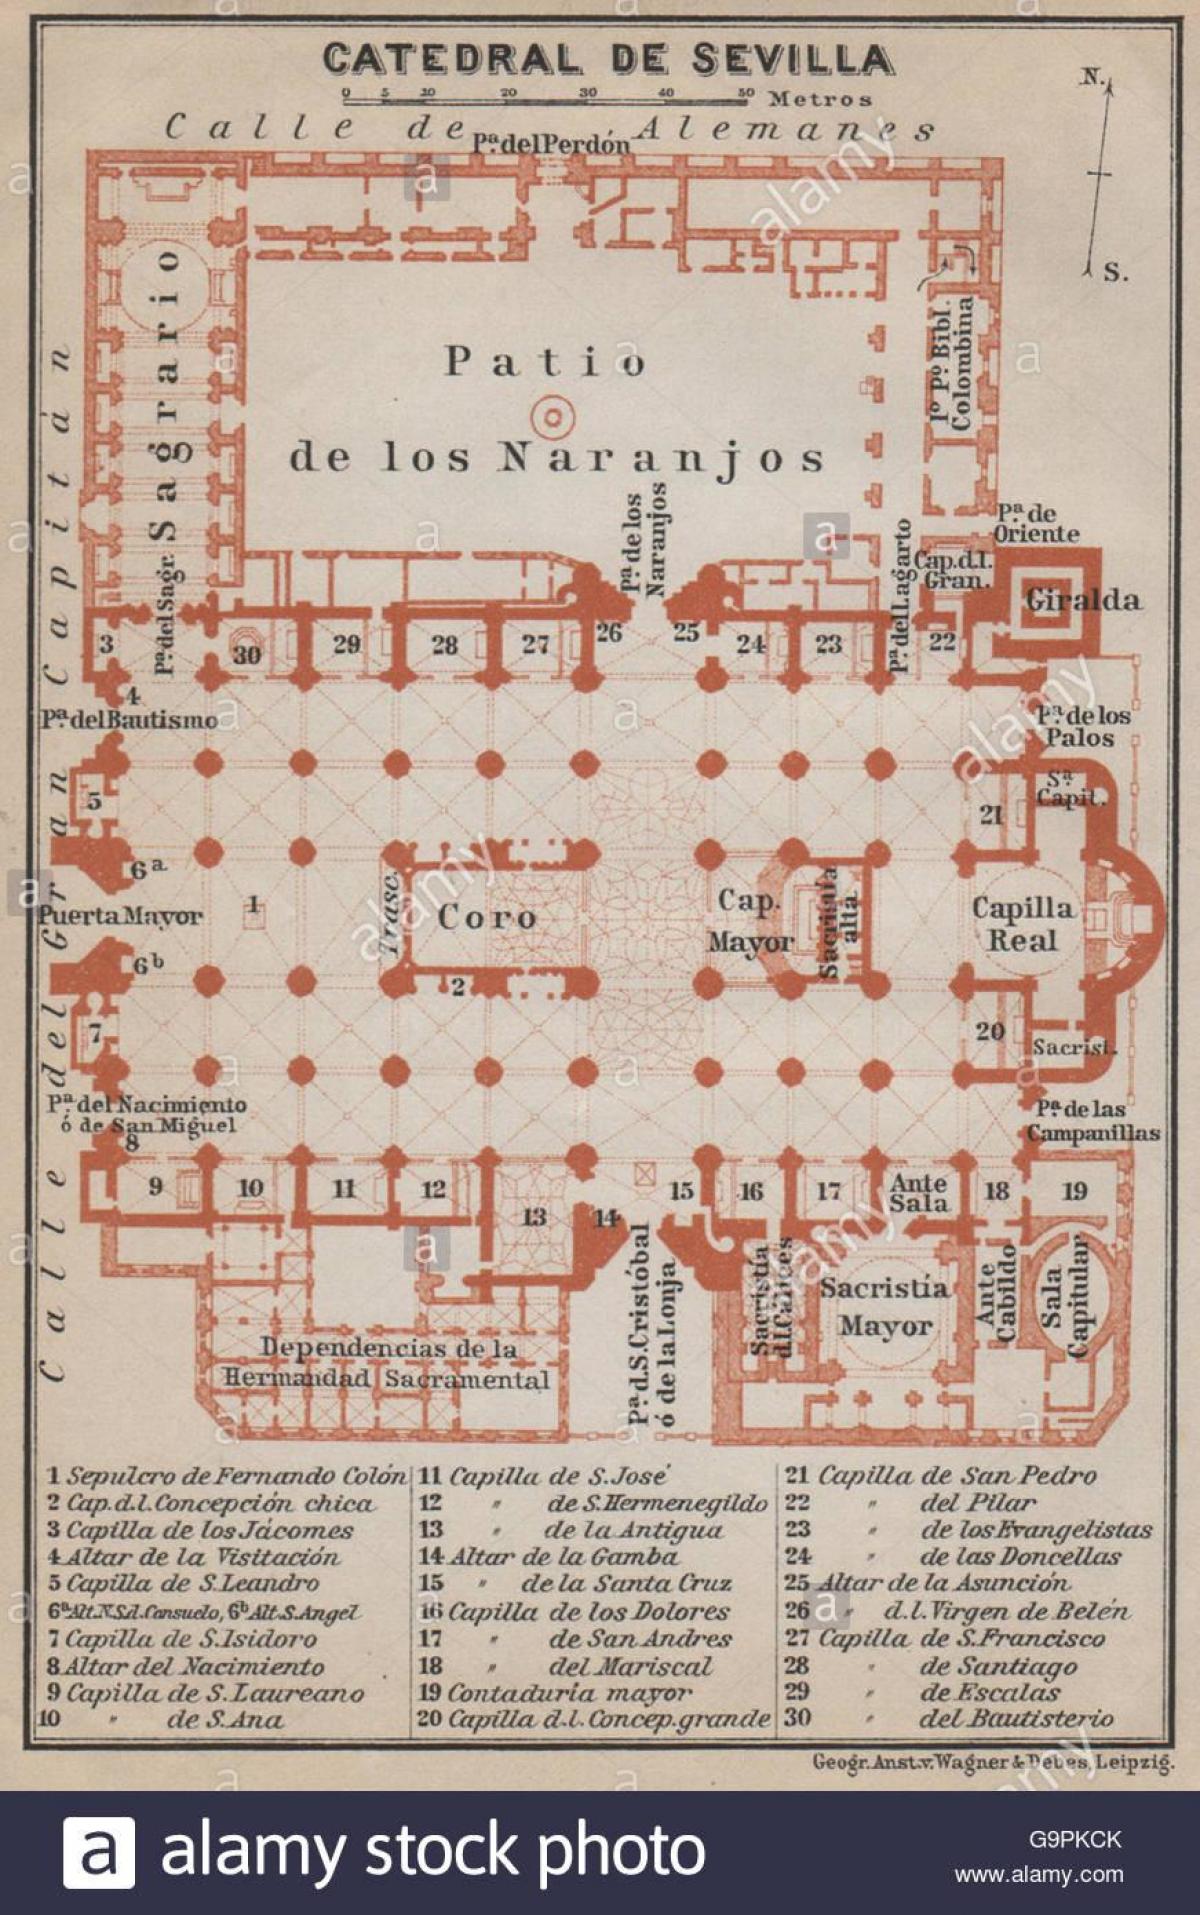 mapa de Sevilla, catedral